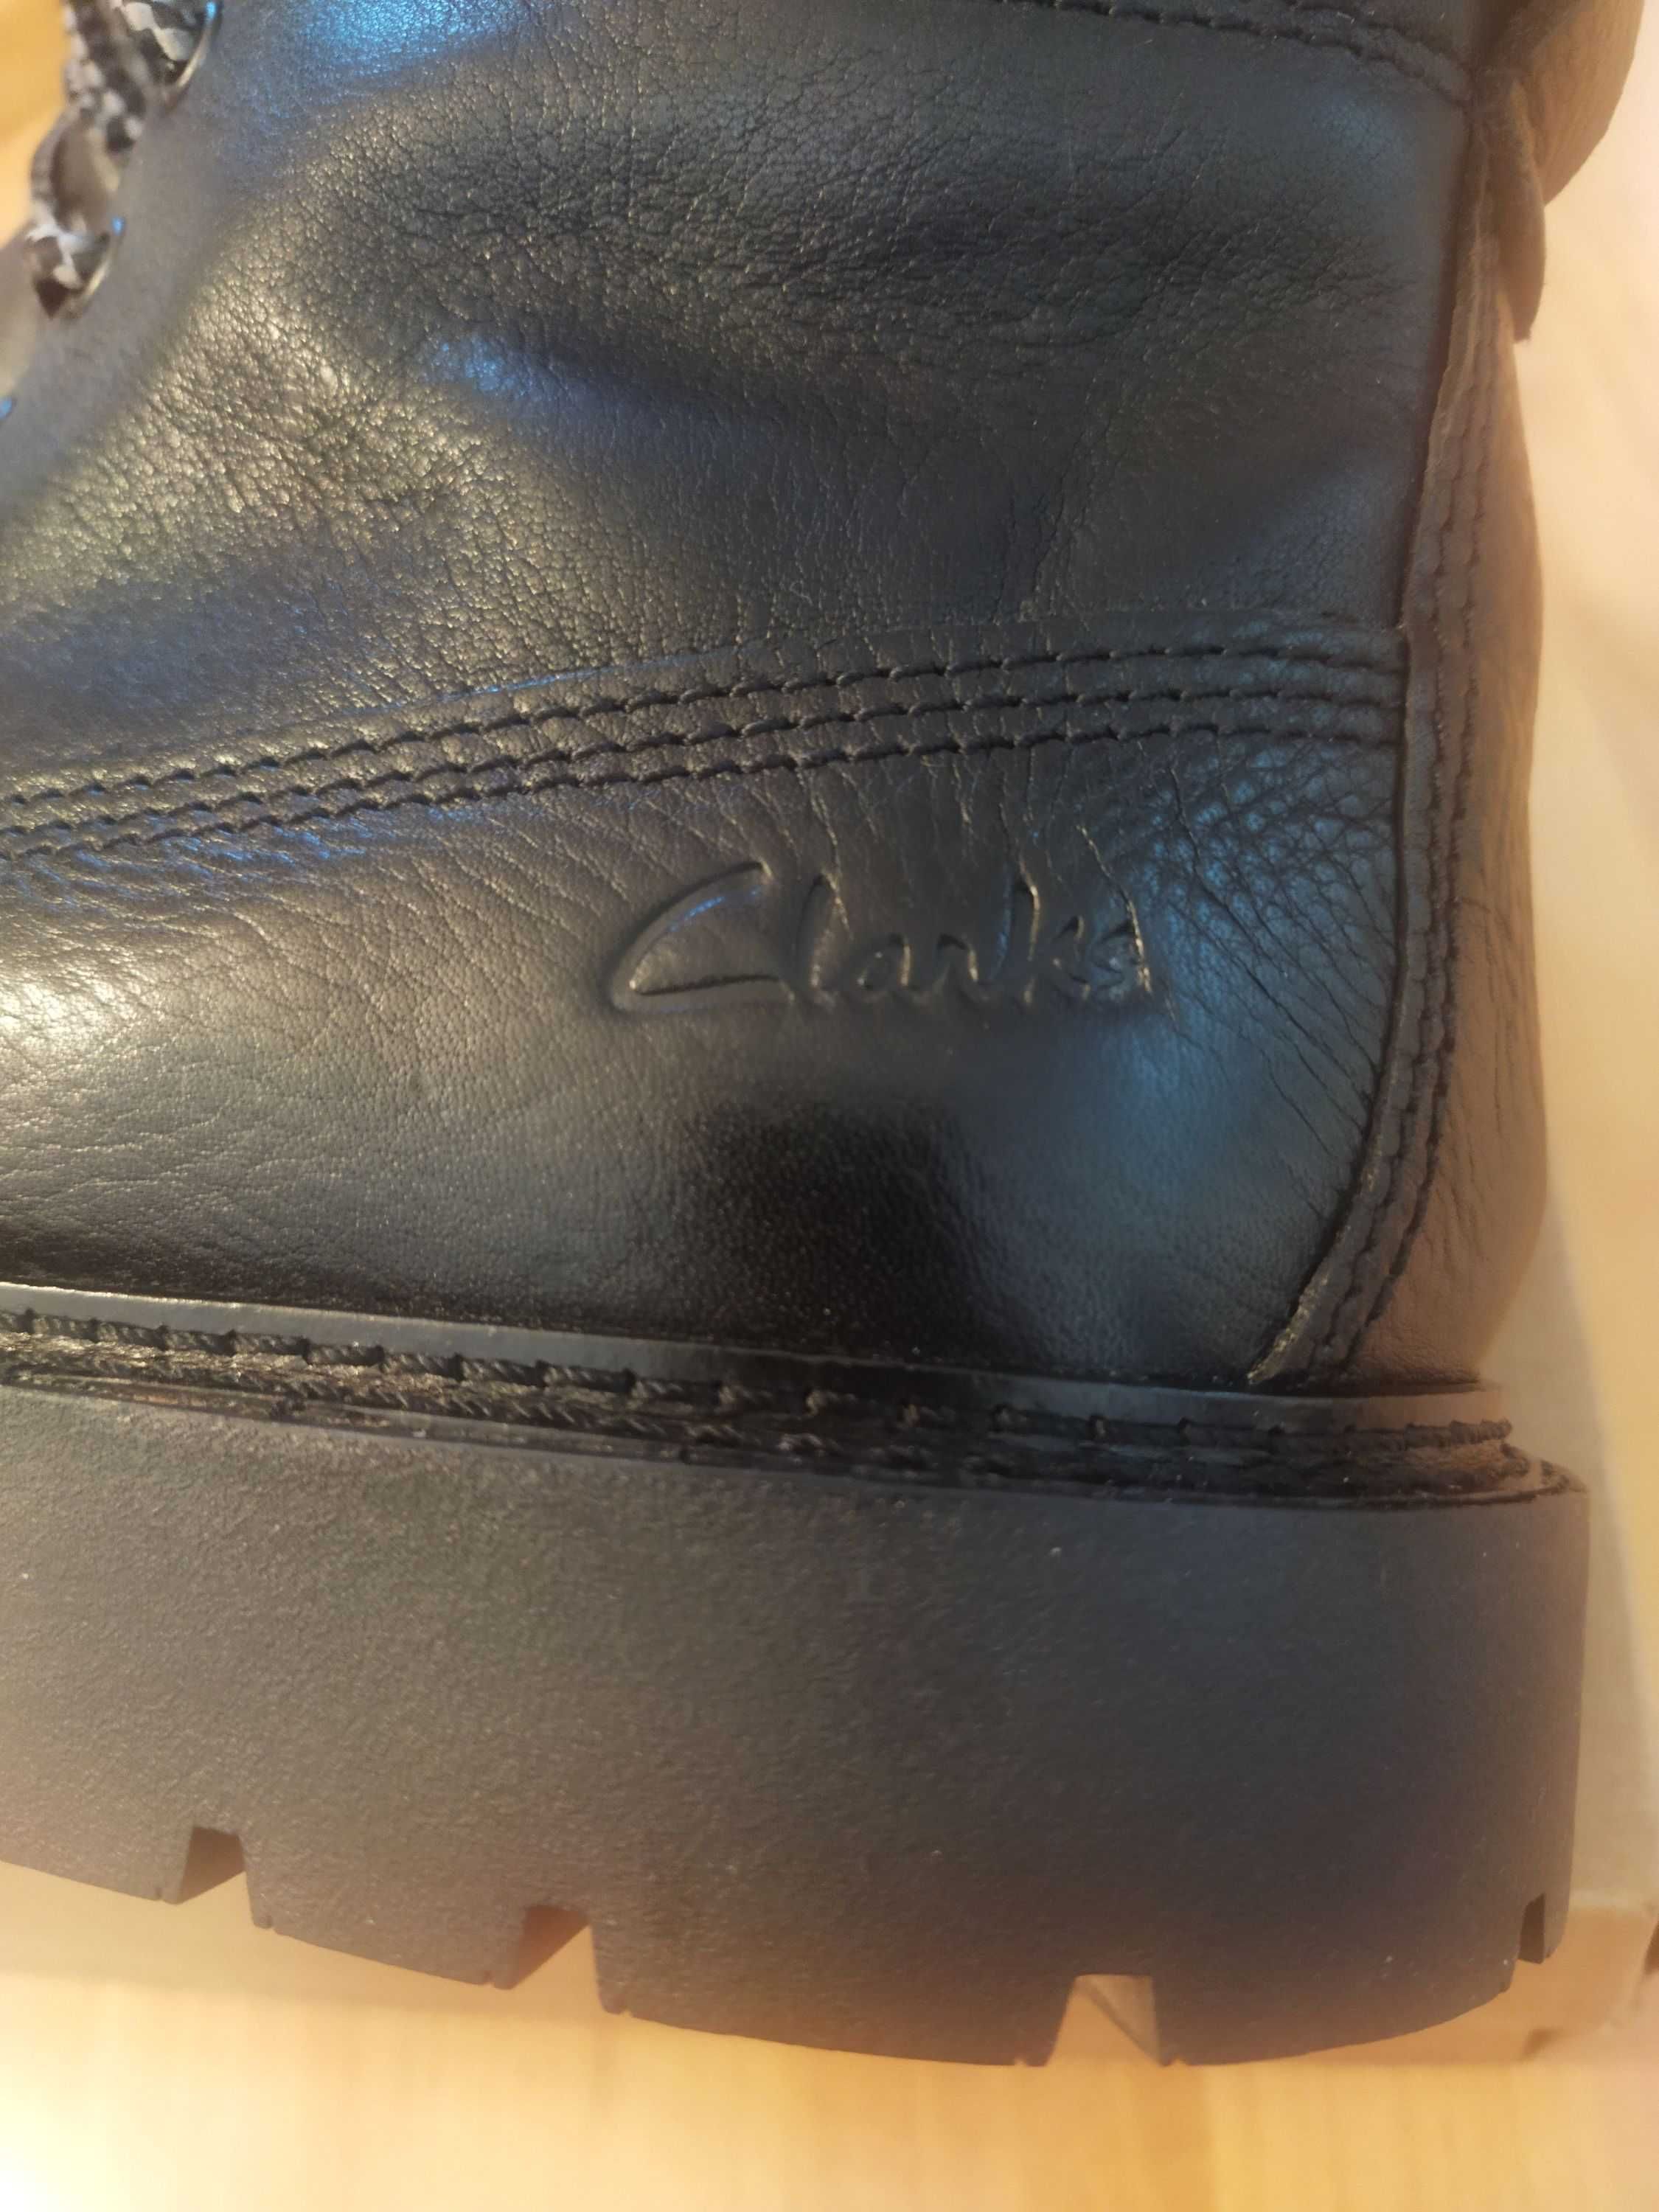 Ботинки Clarks (Великобритания),кожа,оригинал,новые,р-ры 43 и 44